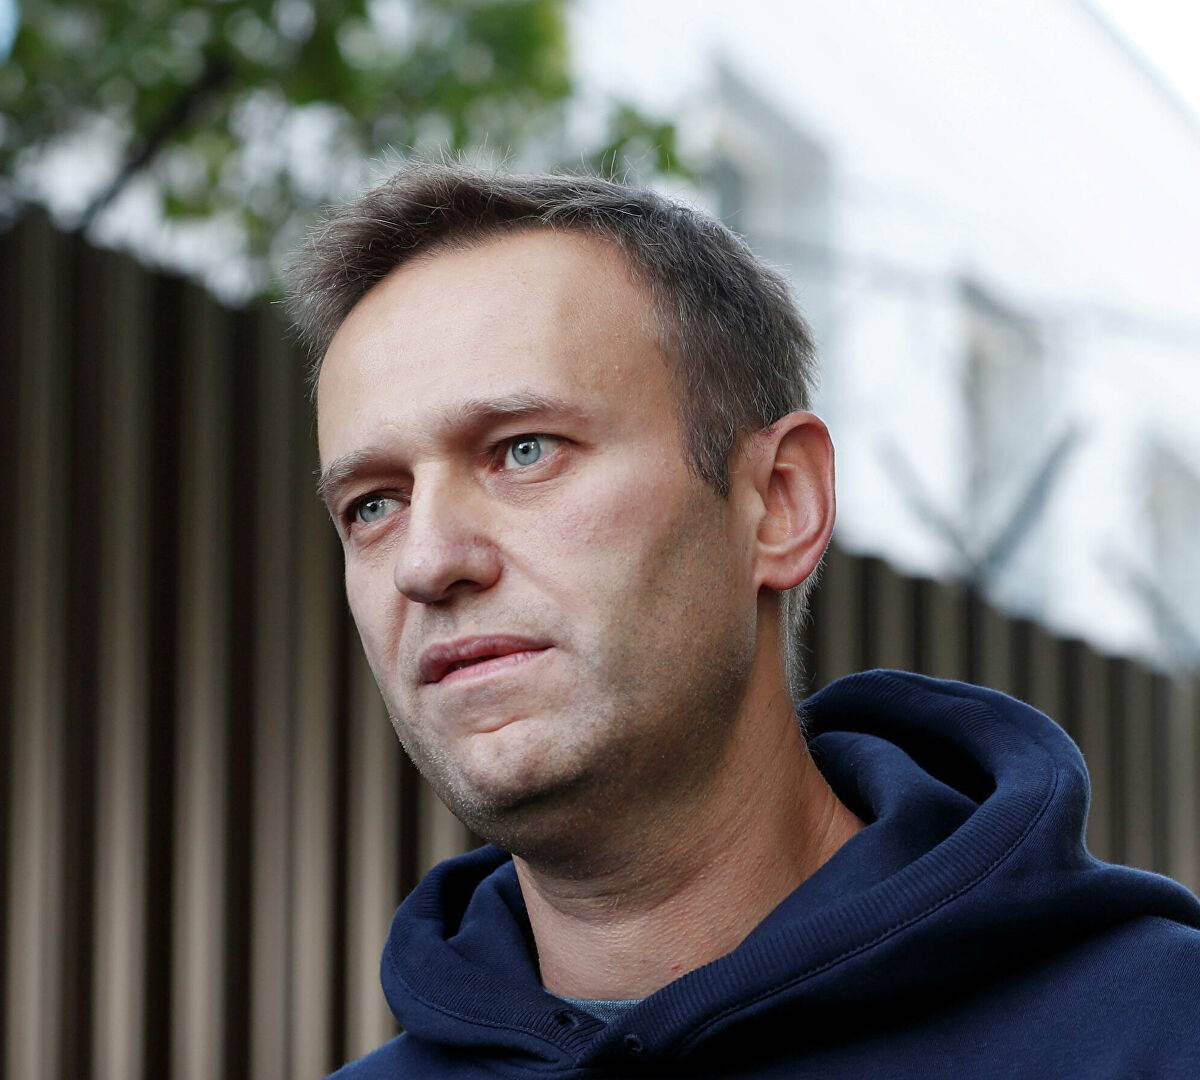 Выздоровлению Навального рады не все: реакции политиков и экспертов